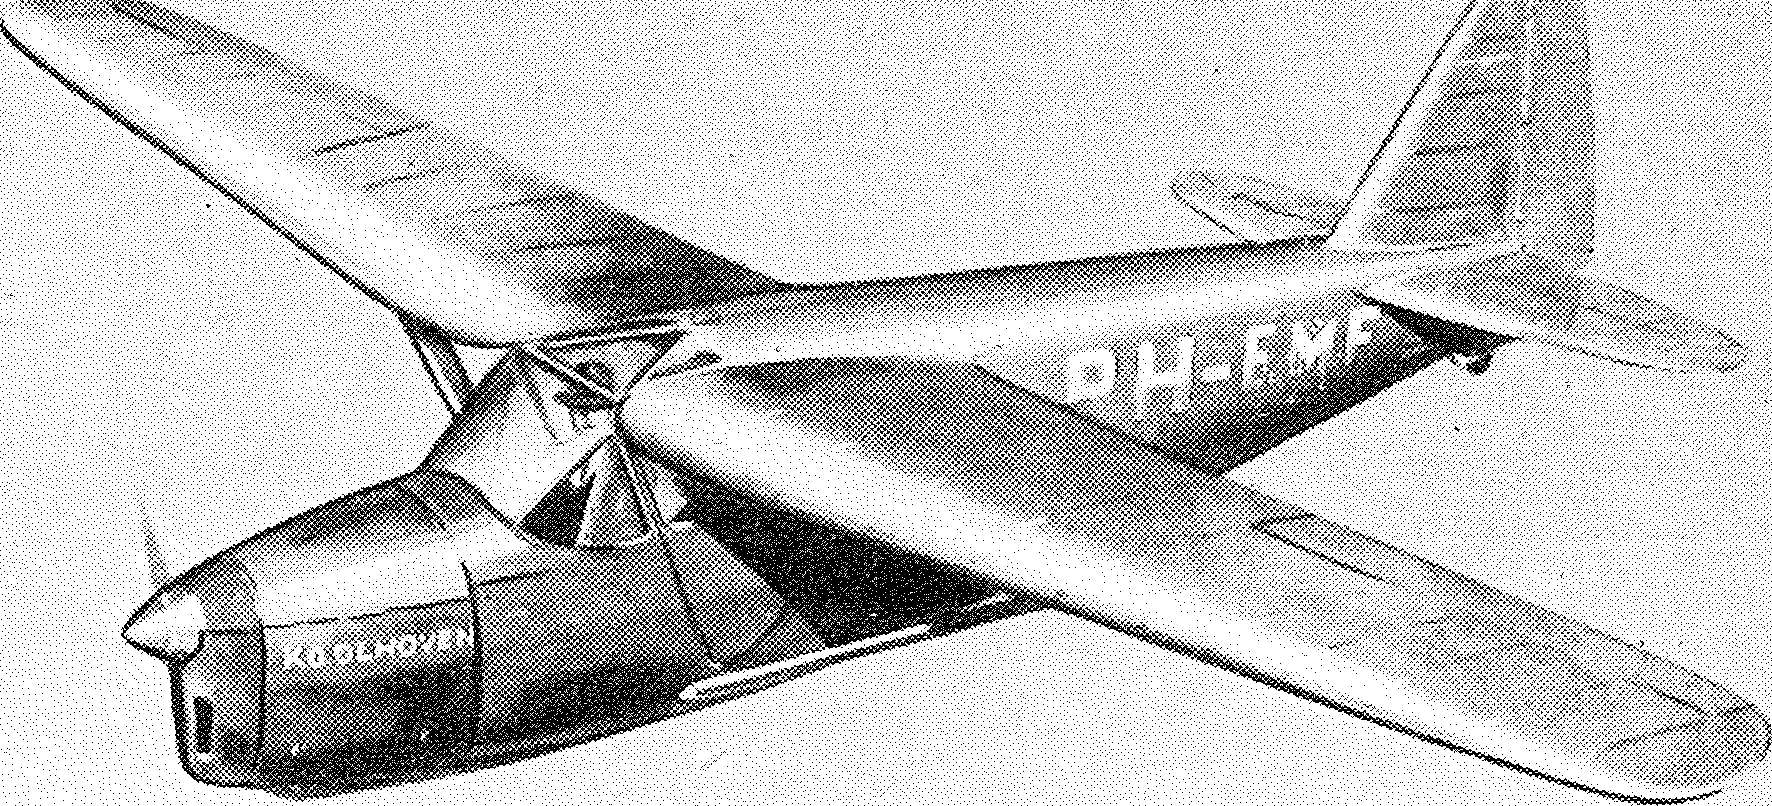 Luftfahrt und Luftverkehr sowie Luftwaffe im Dritten Reich 1938